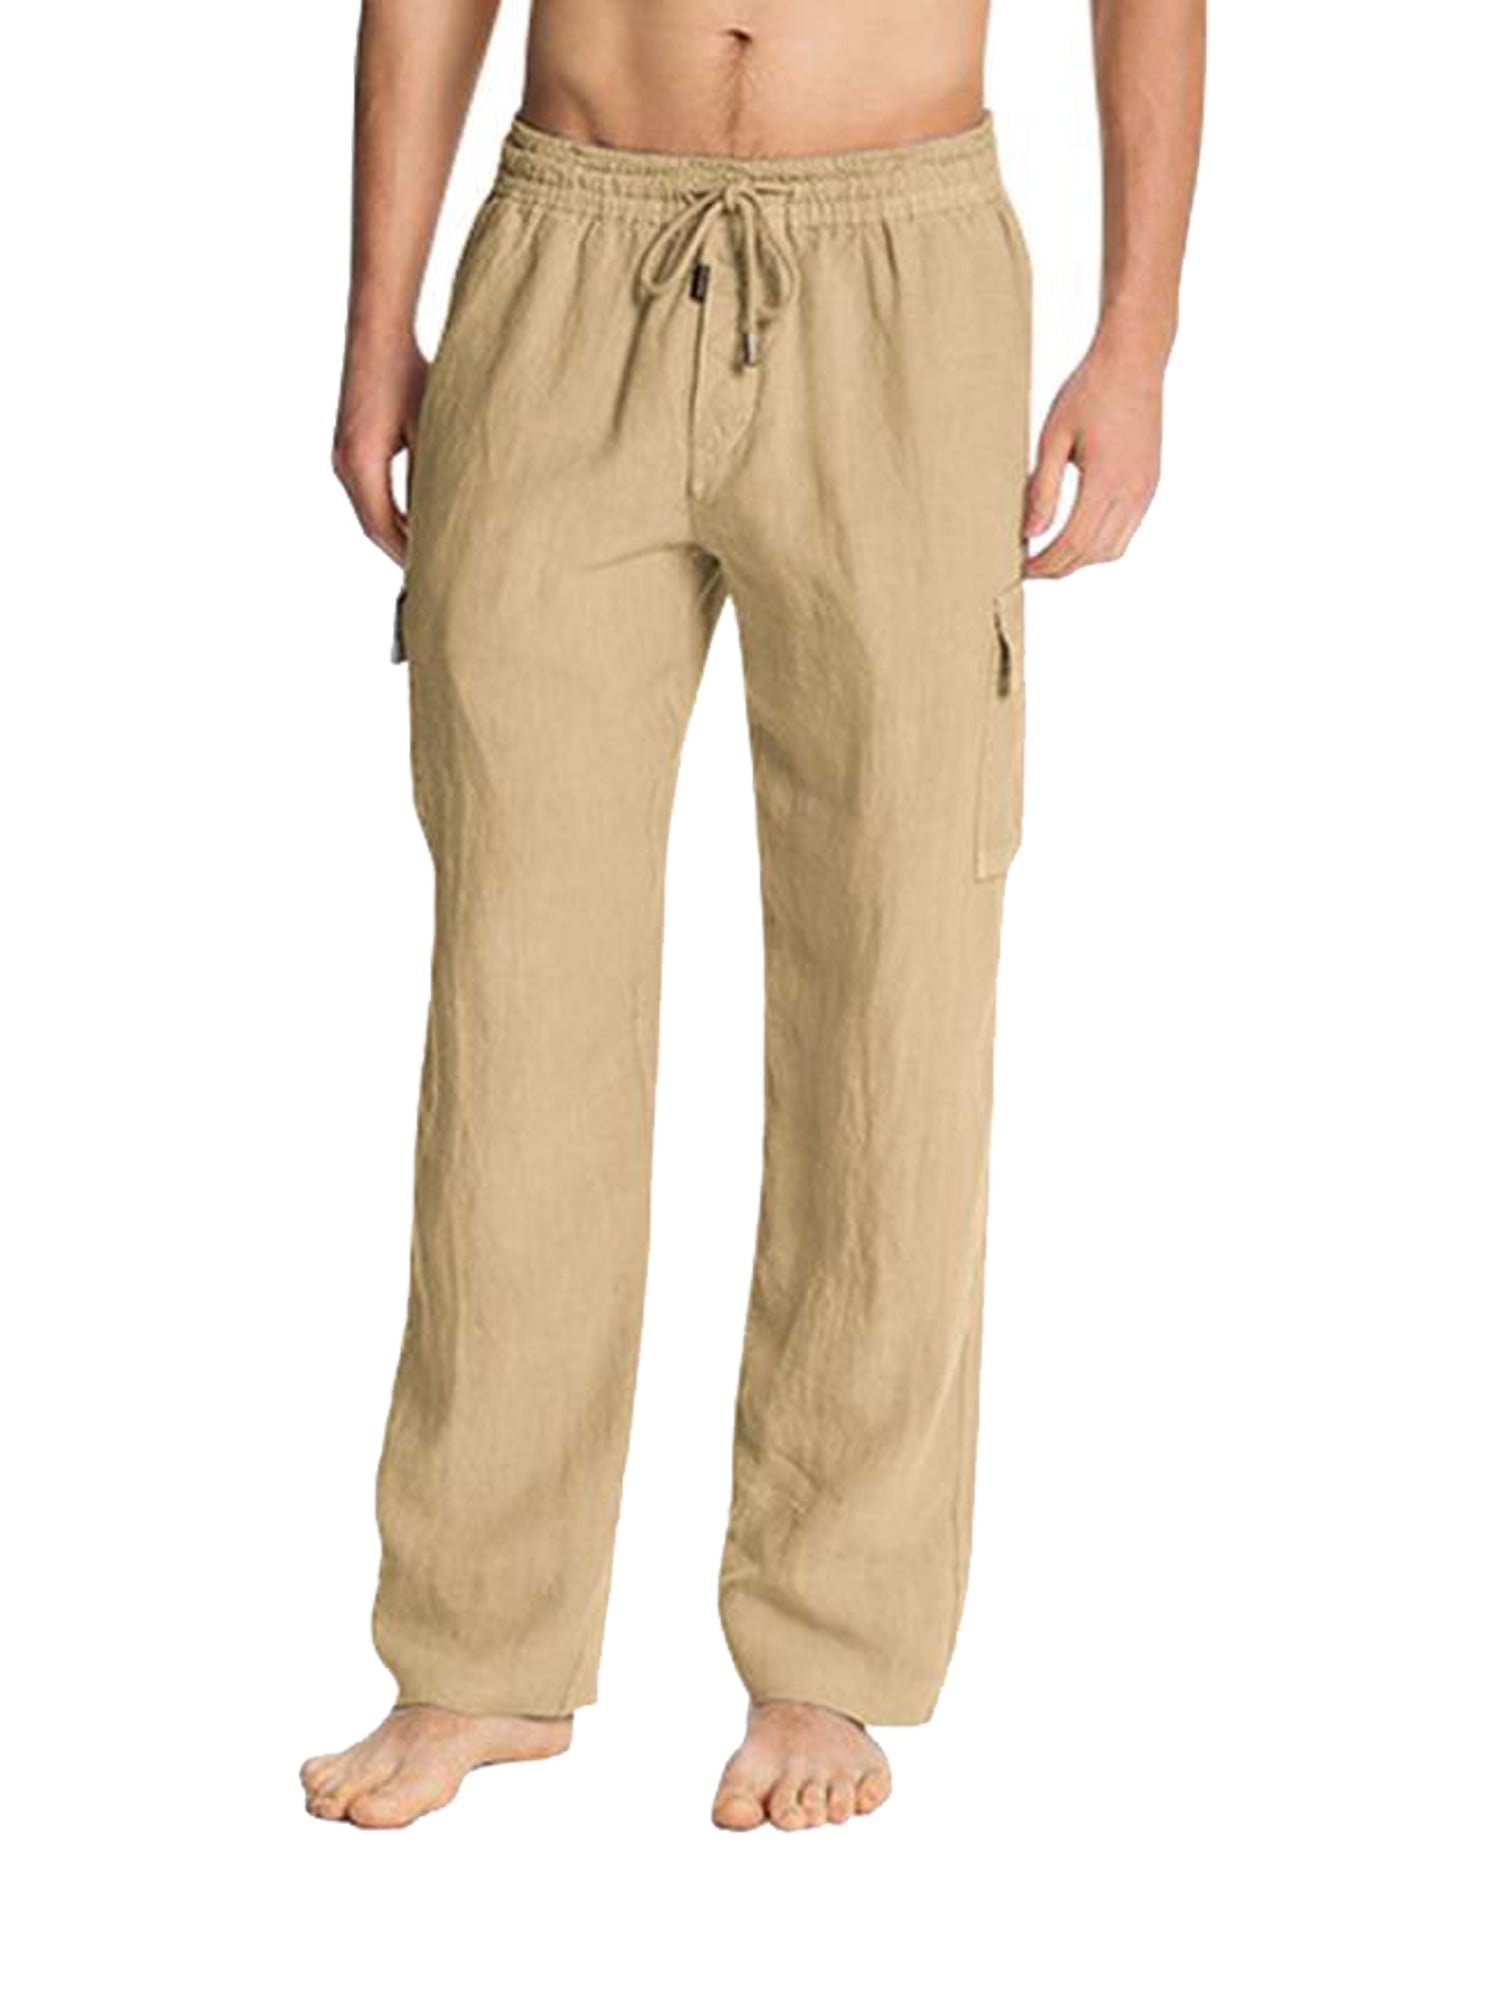 Men/'s Casual Denim Jogger Pants Sweatpant Drawstring Elastic Waist Trousers Jean